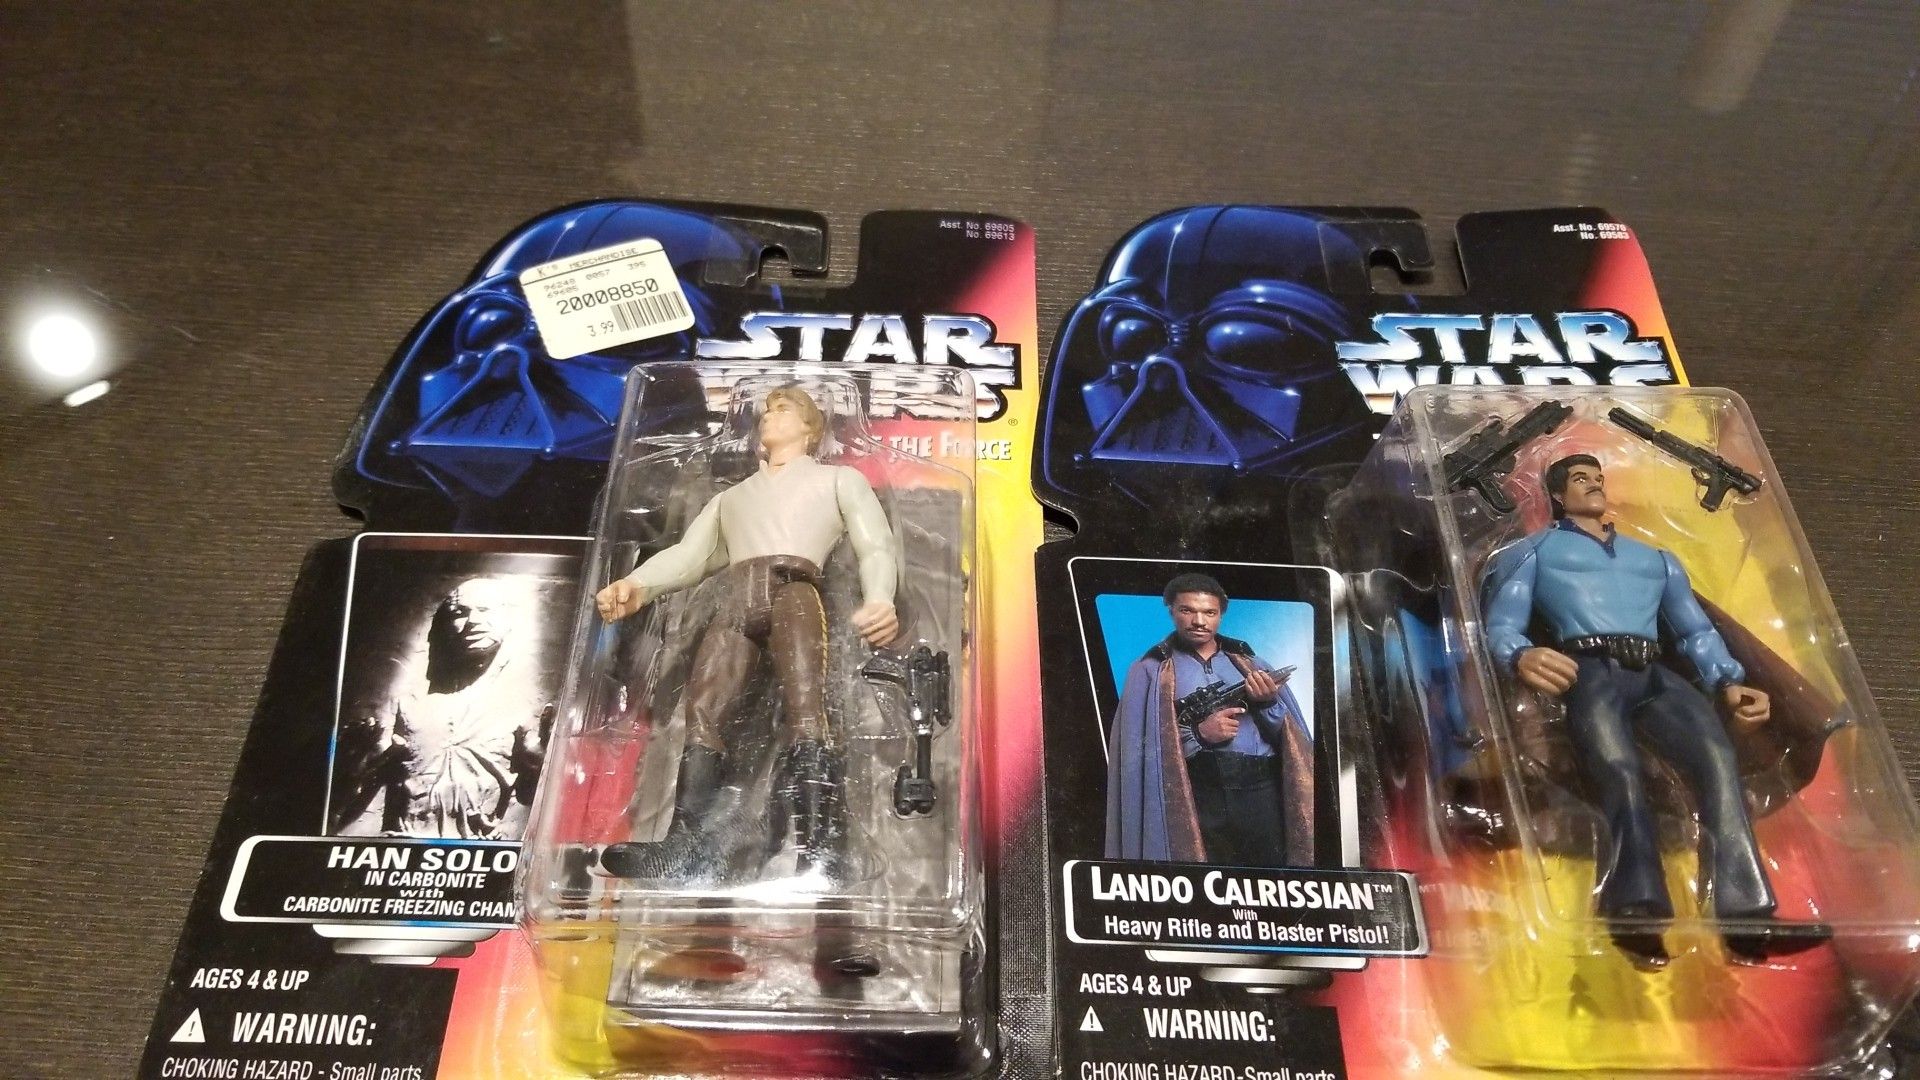 Lando and Han Solo